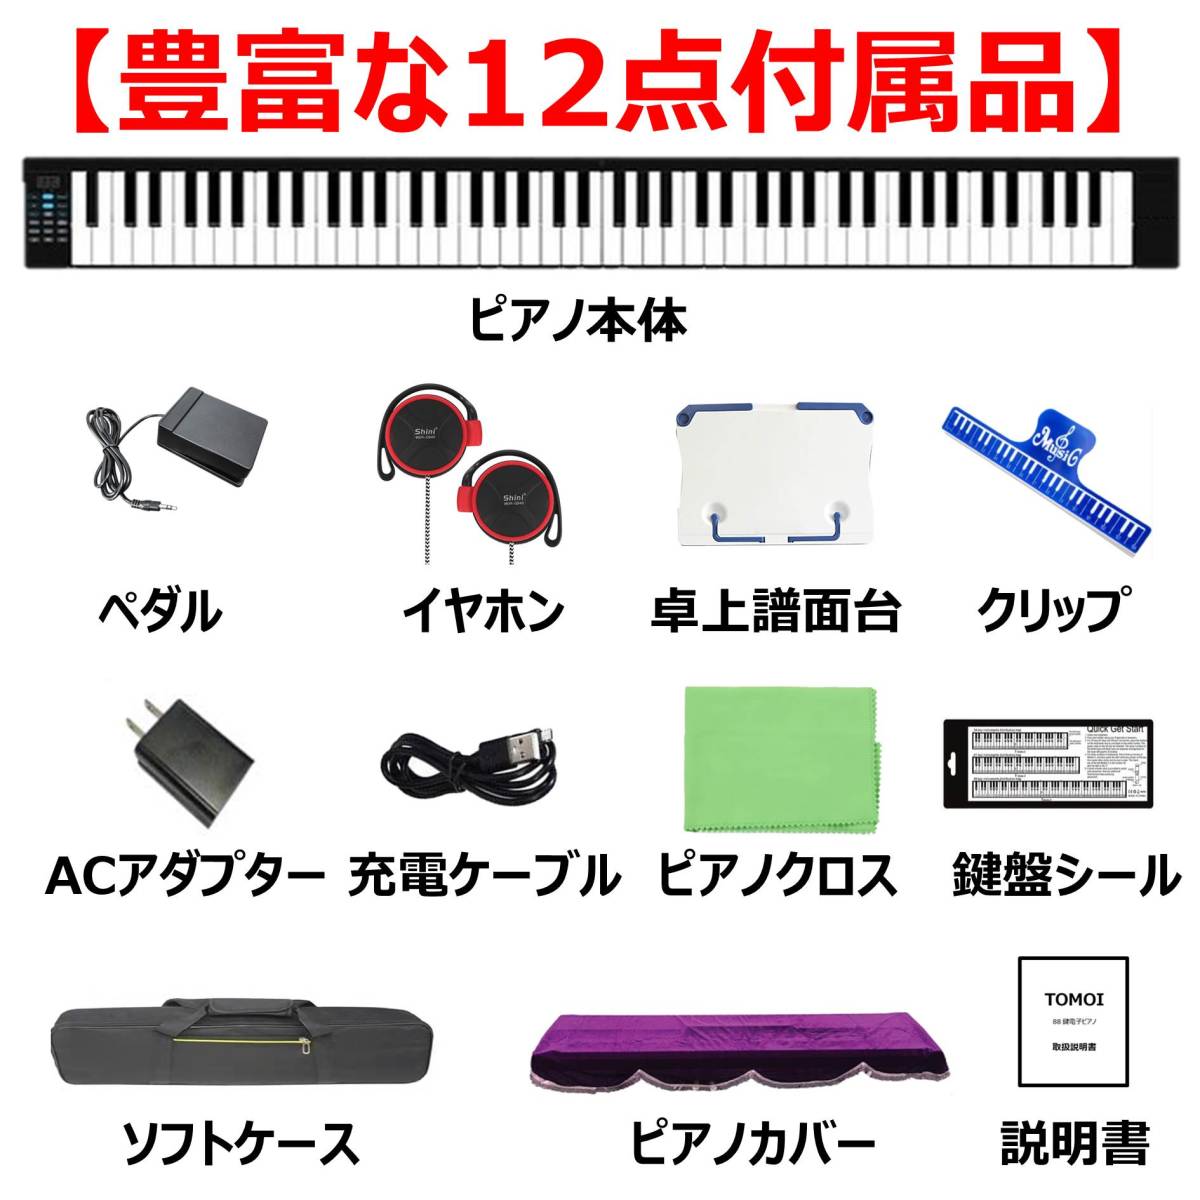 電子ピアノ 88鍵盤 折り畳み式 携帯型 ペダル 独立譜面台 イヤホン付属 MIDI ワイヤレスMIDI ソフトケース ピアノカバー -9